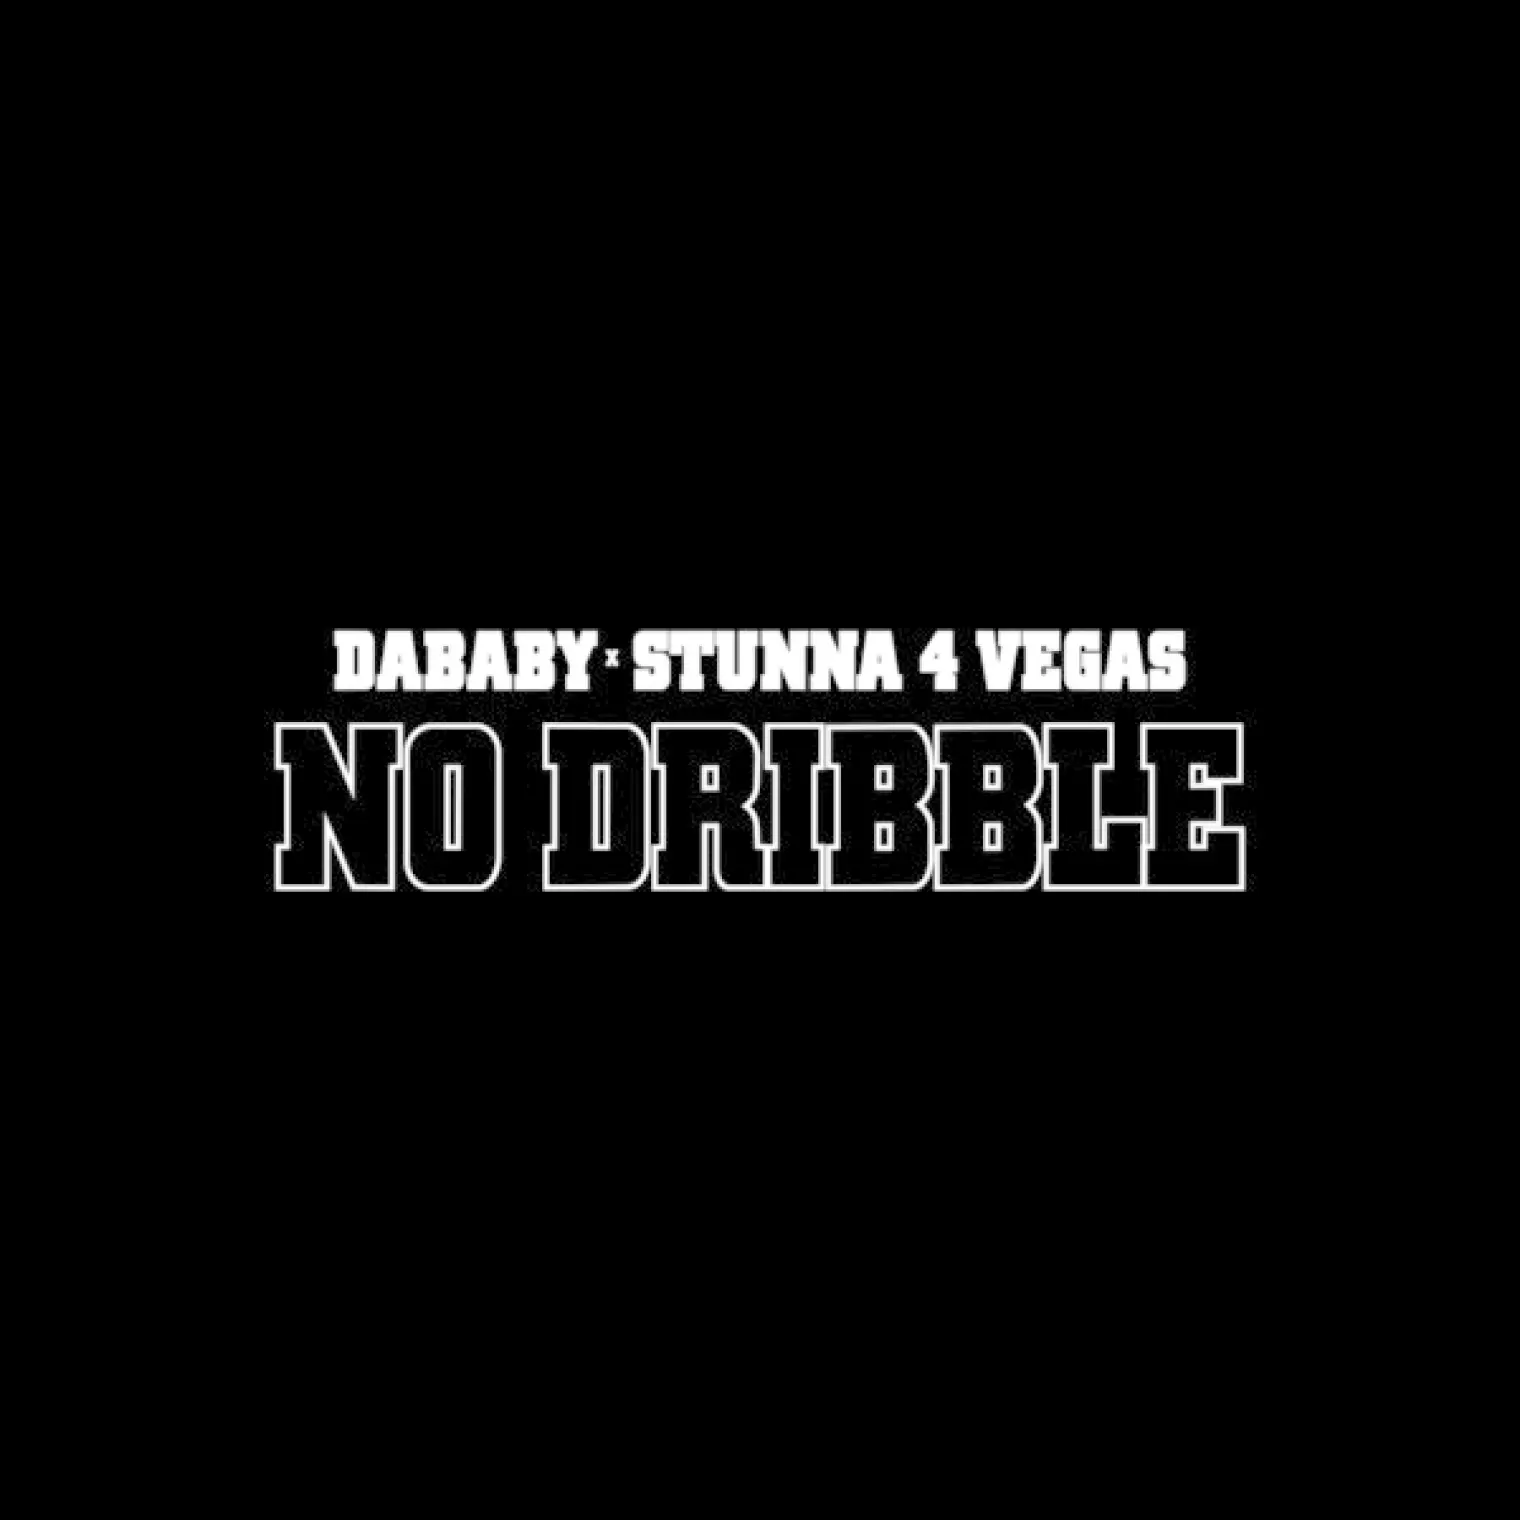 NO DRIBBLE -  DaBaby 